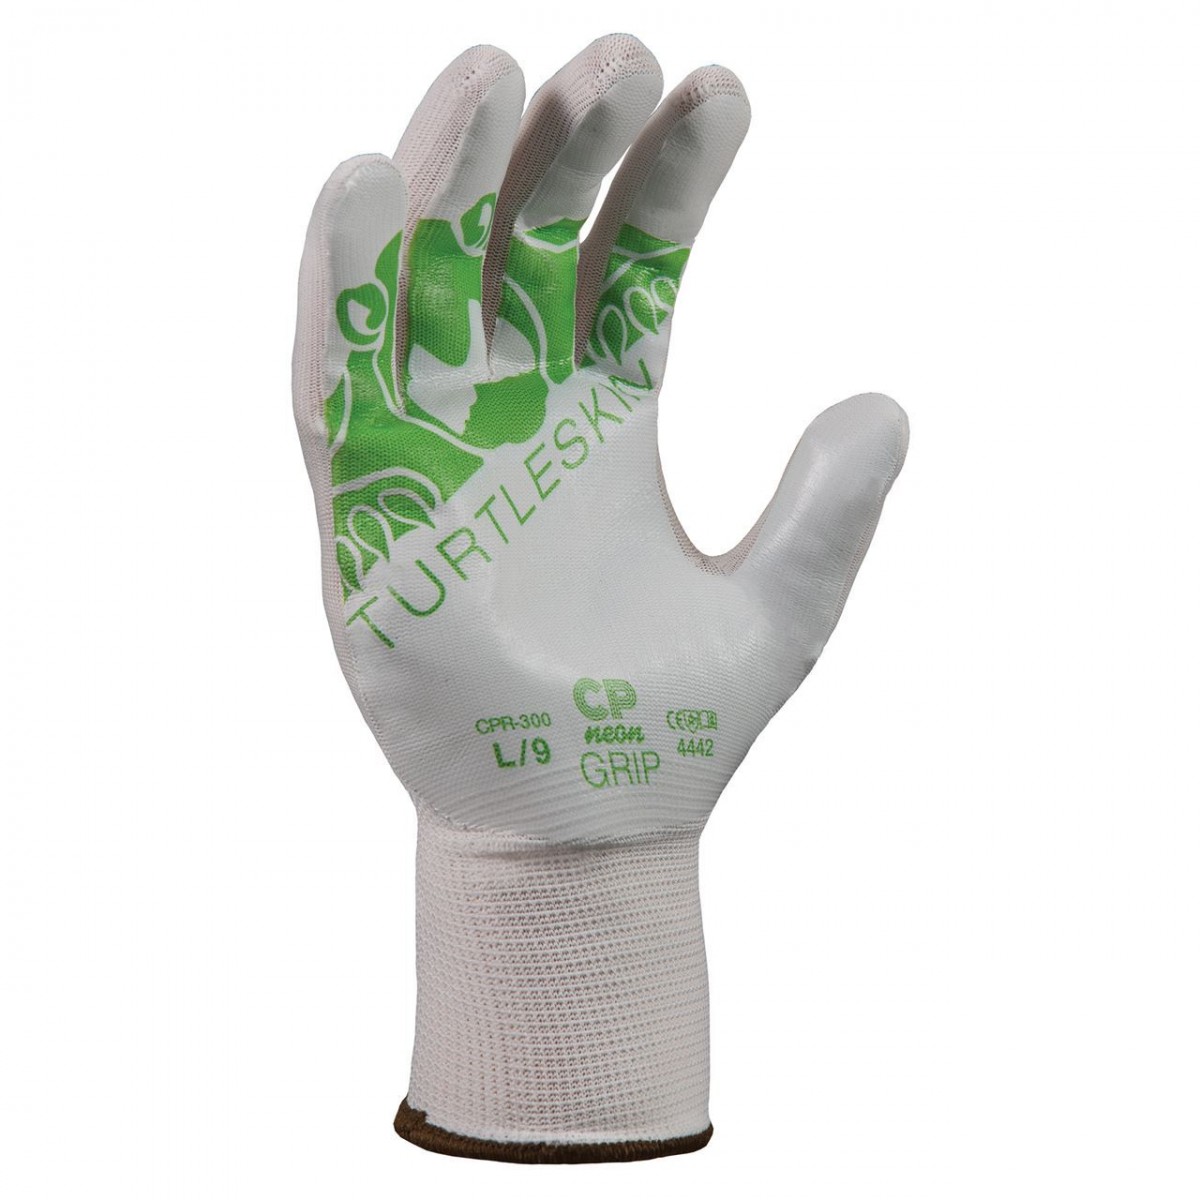 #CPN-530 Turtleskin® CP Grip 530 Puncture-Resistant Work Gloves